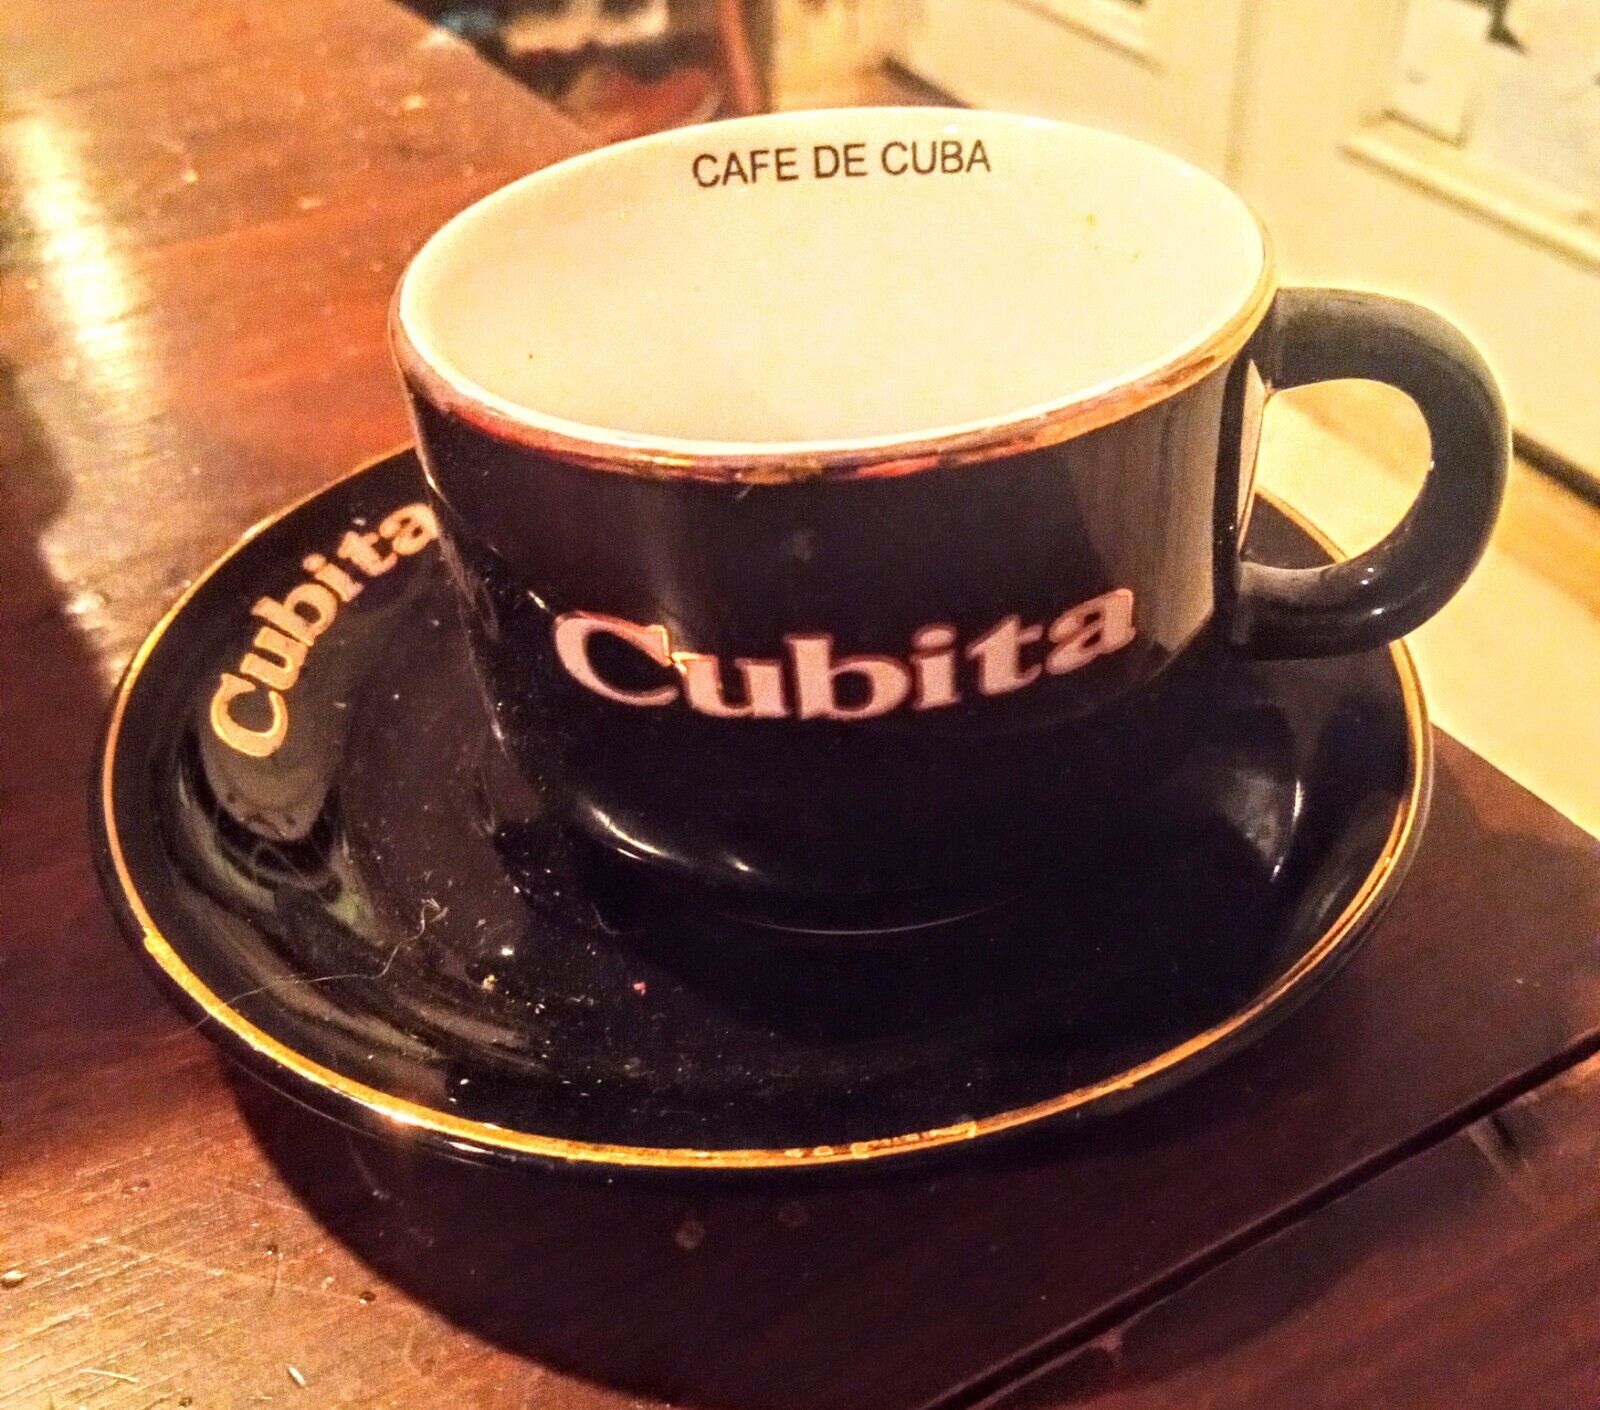 Cubita Cafe de Cuba Espresso Coffee Ceramic 1 Cup